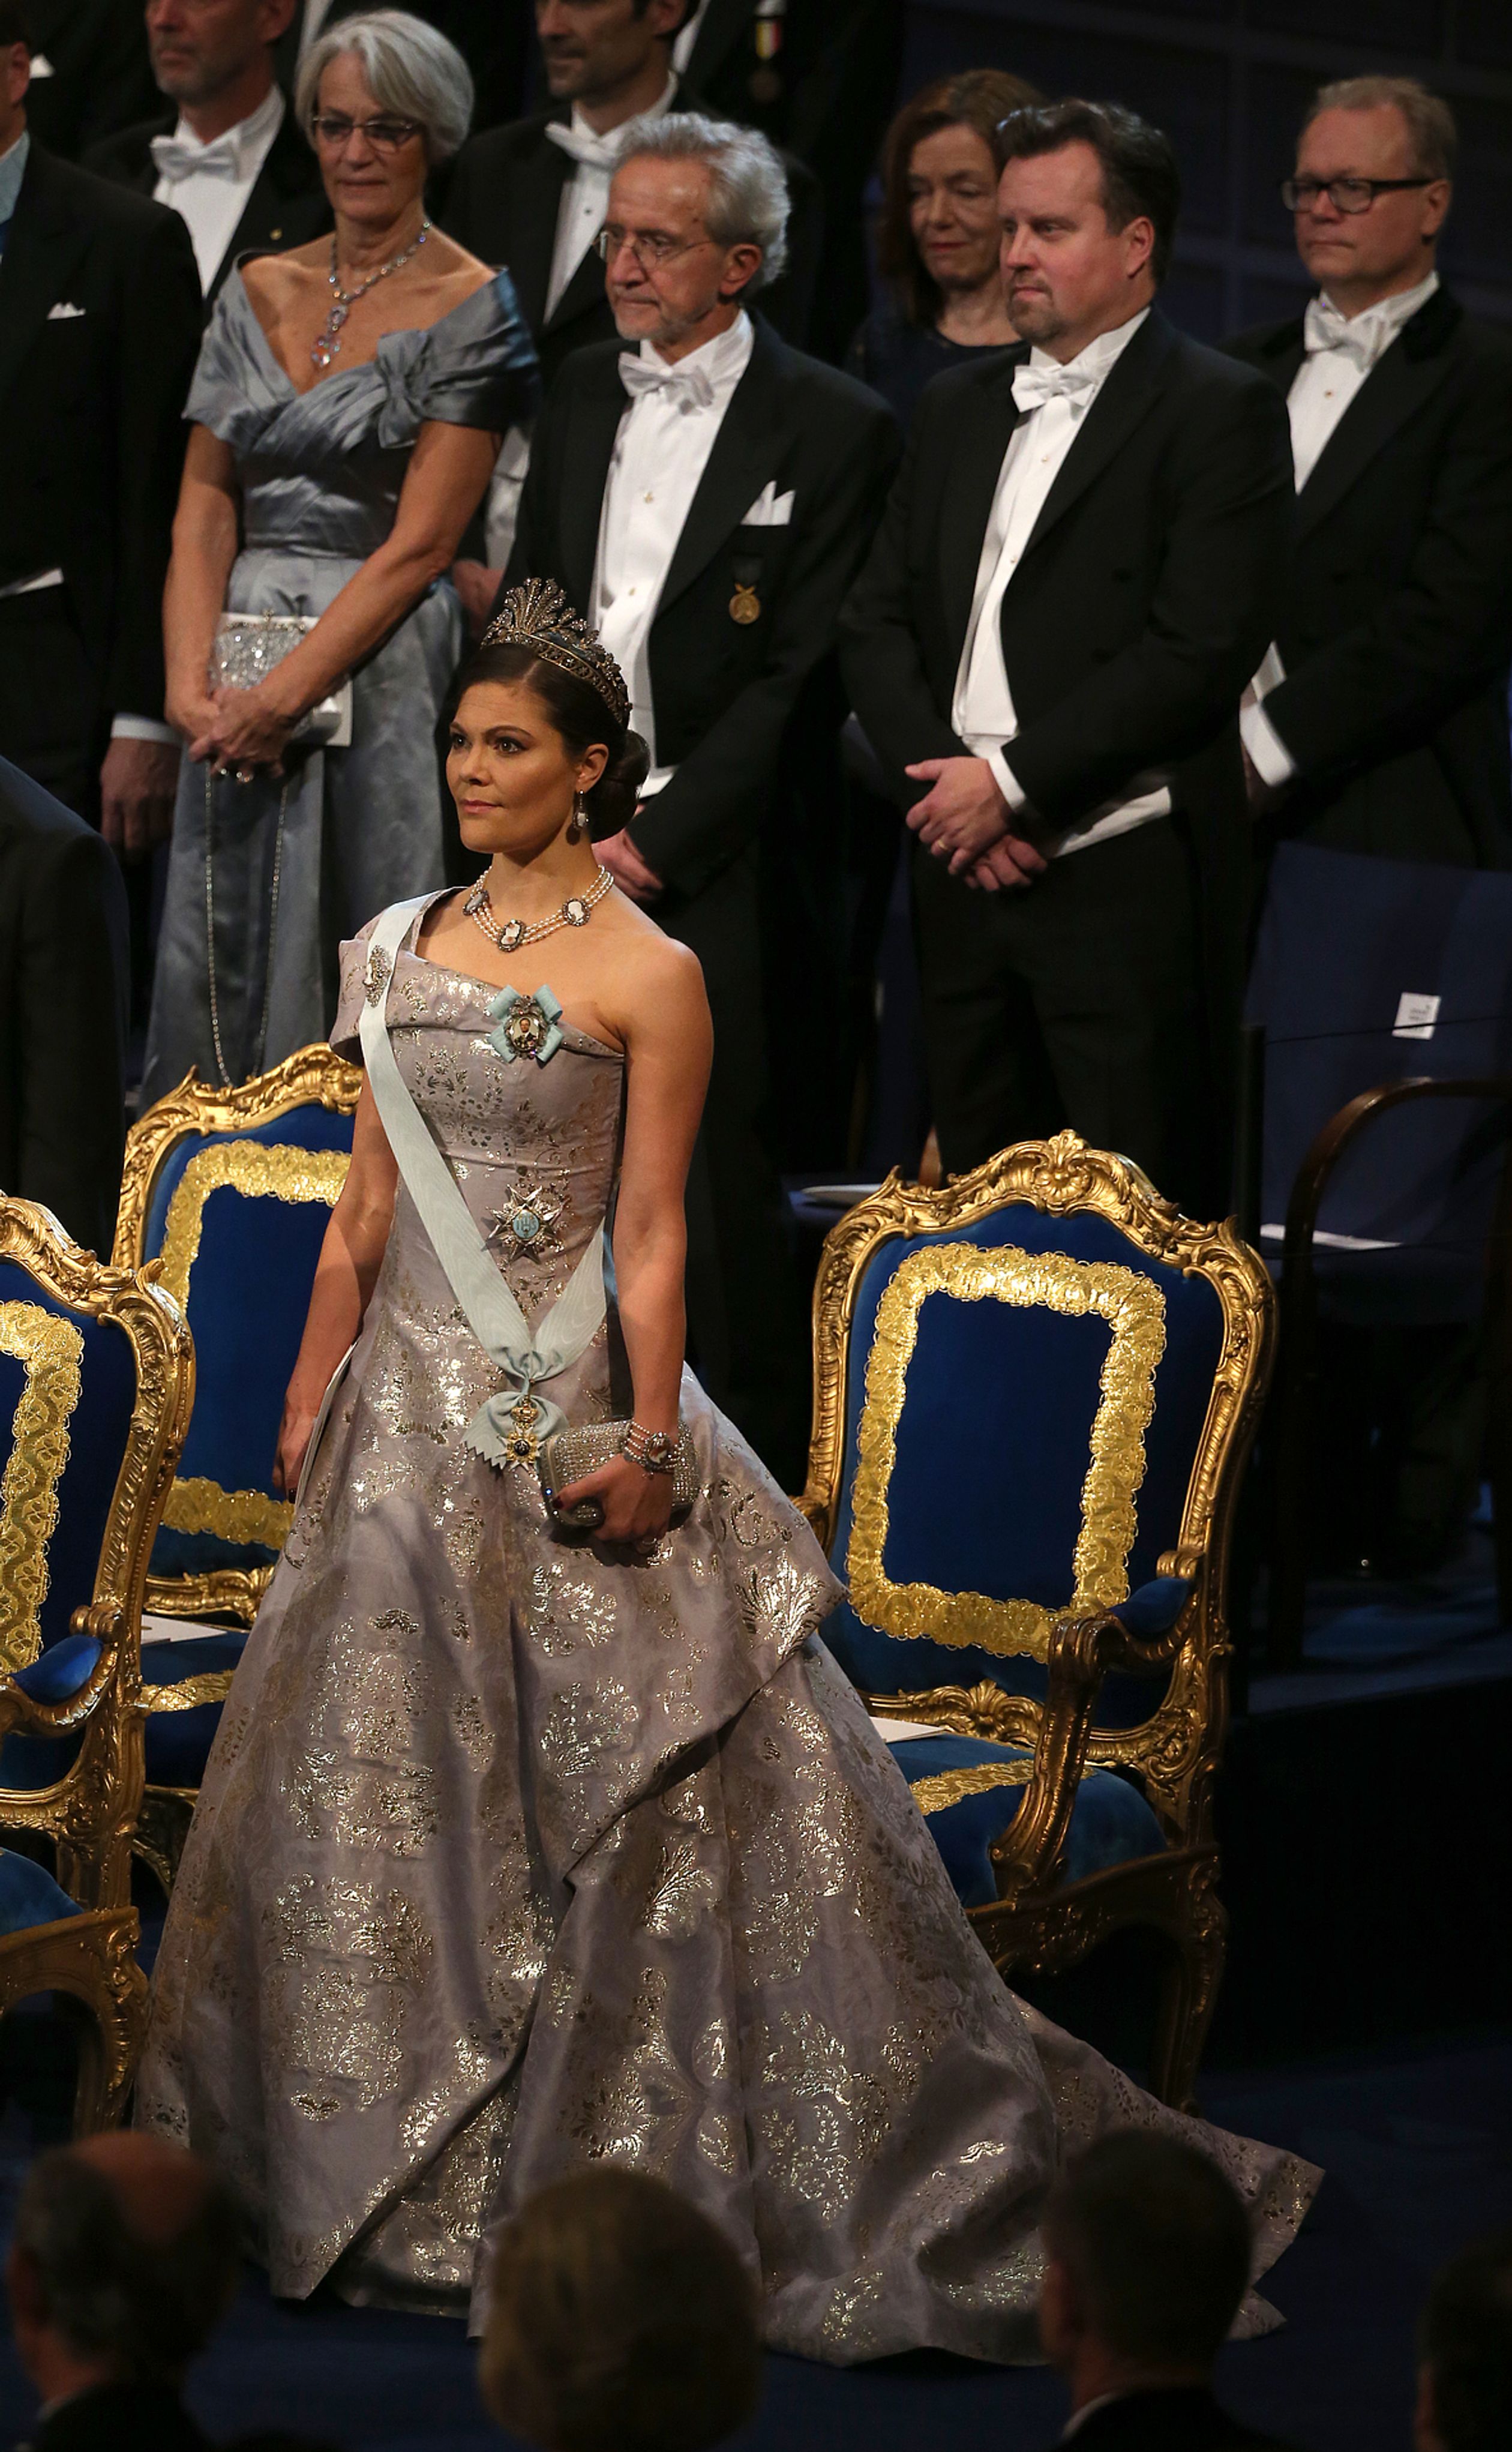 Het lijkt erop dat prinses Victoria echt houdt van gouden accenten in haar outfits. Voor de